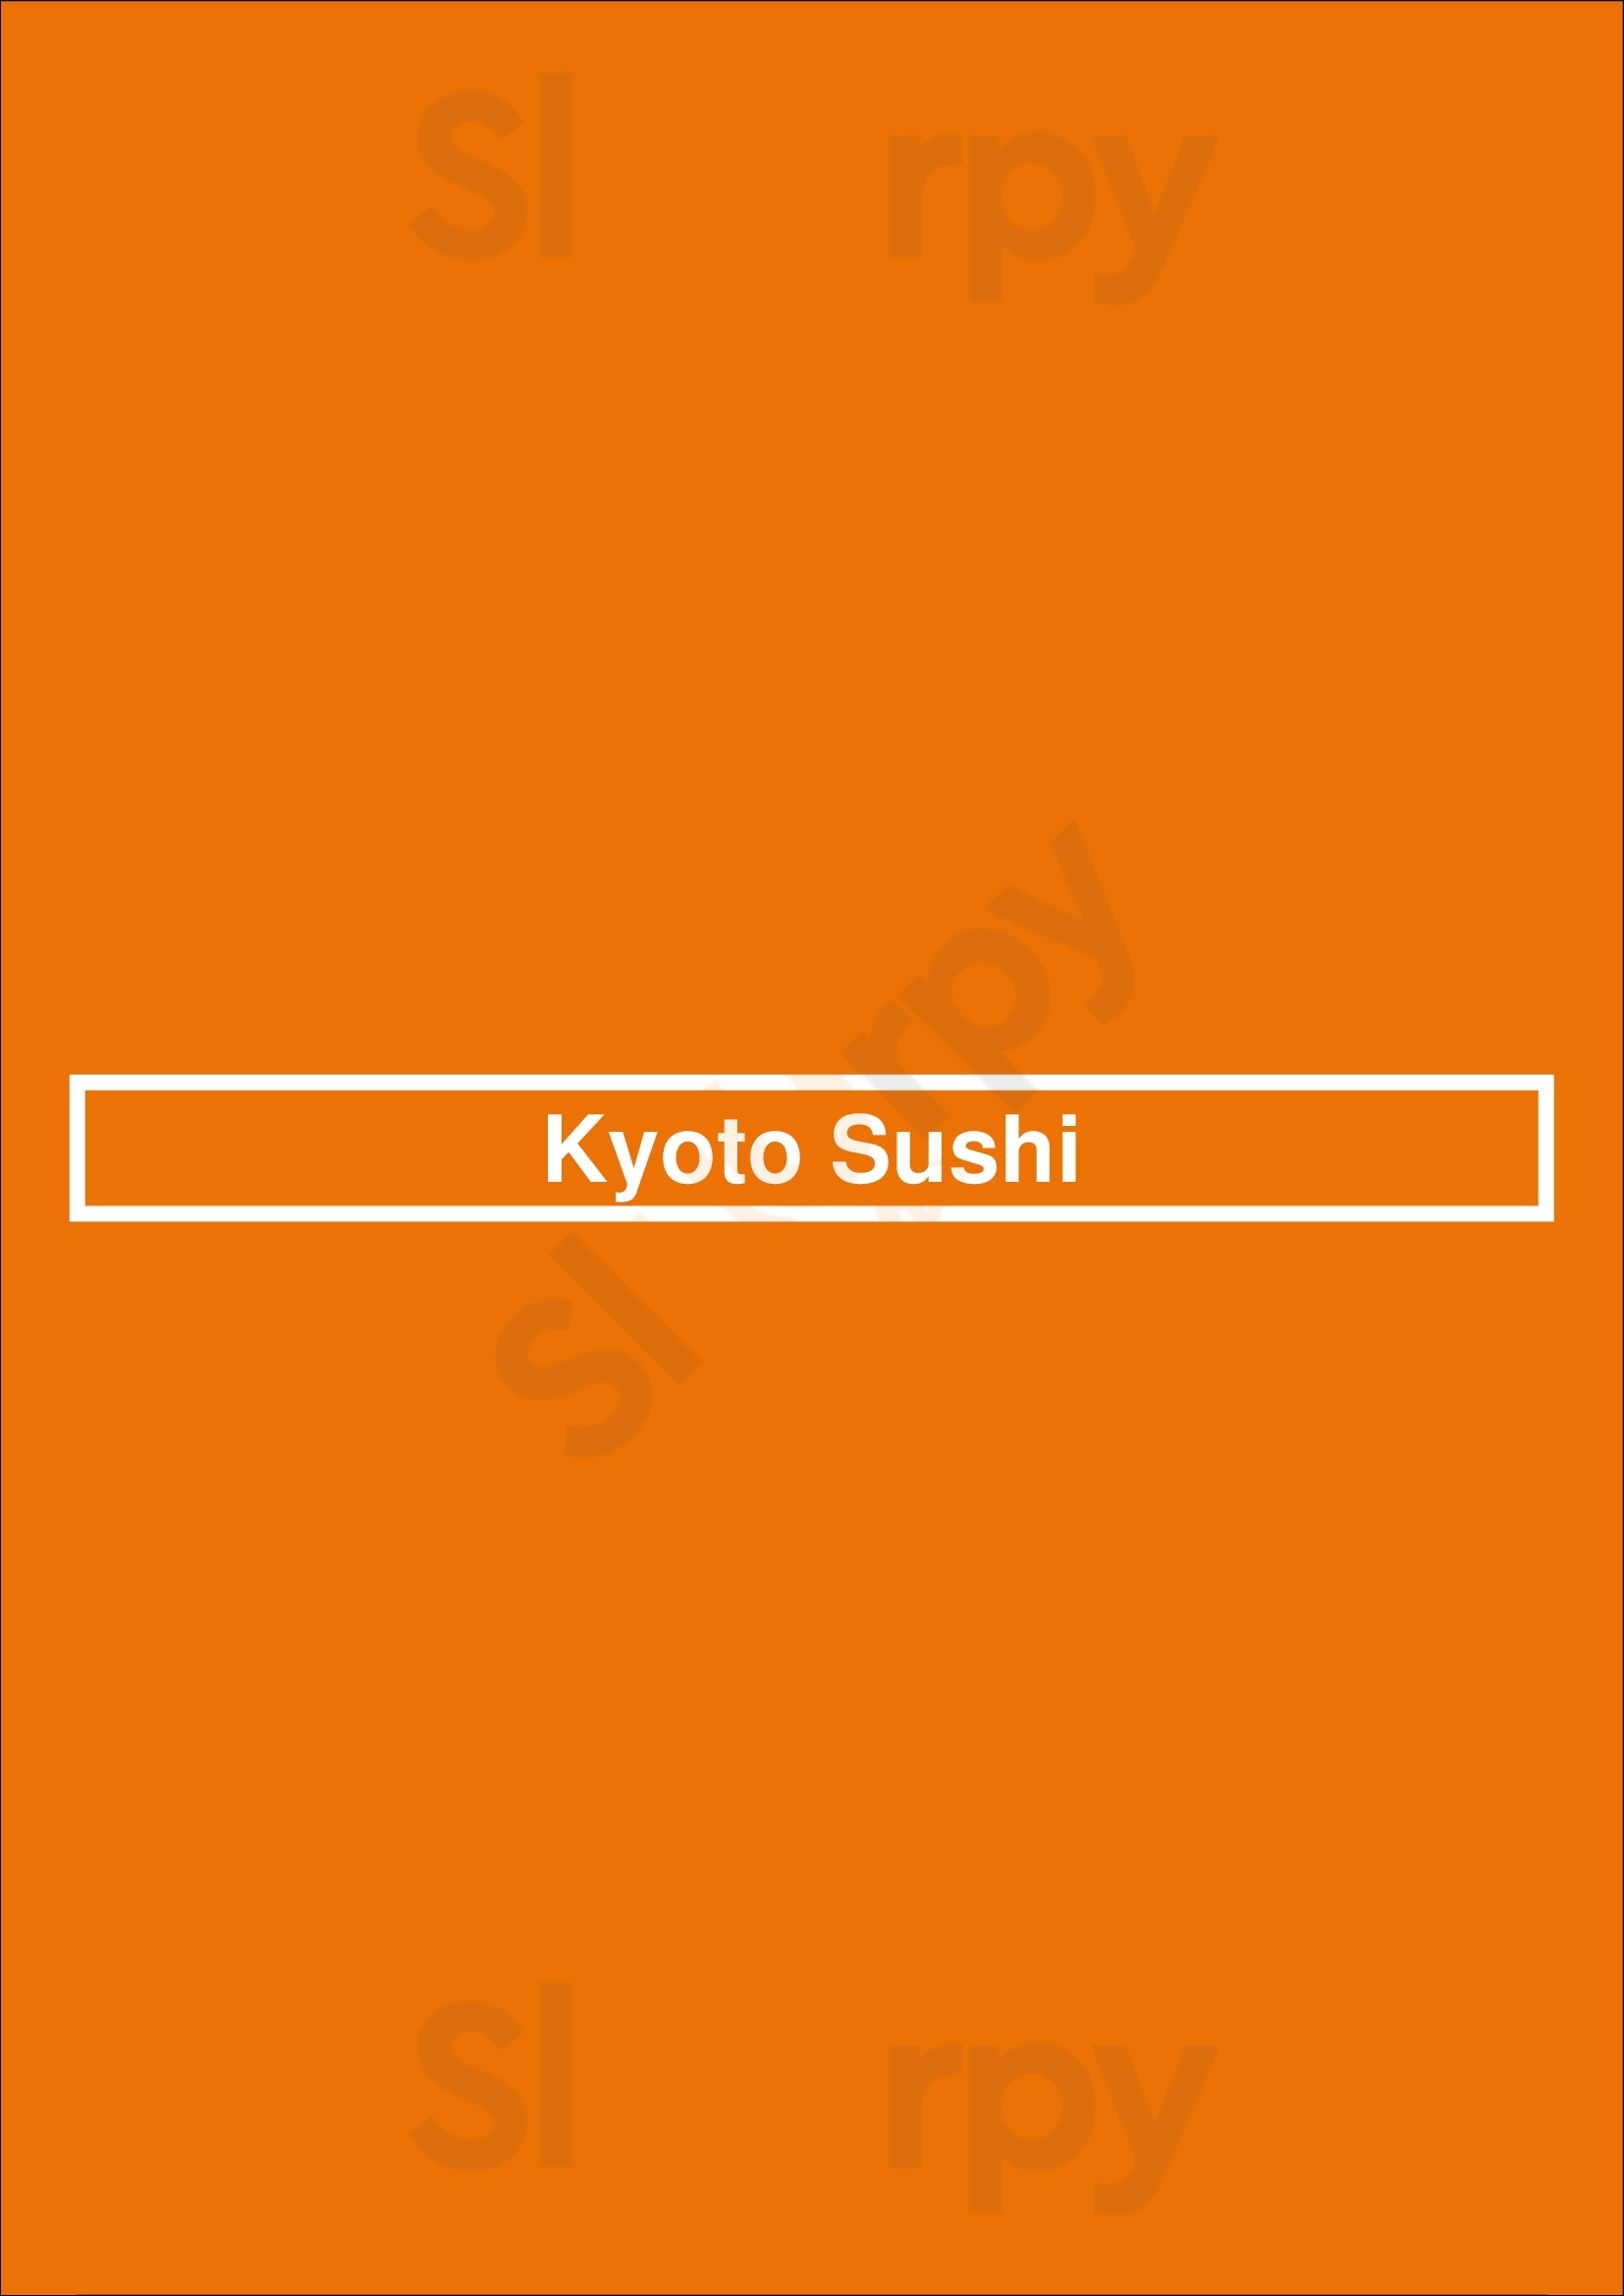 Kyoto Sushi Los Angeles Menu - 1